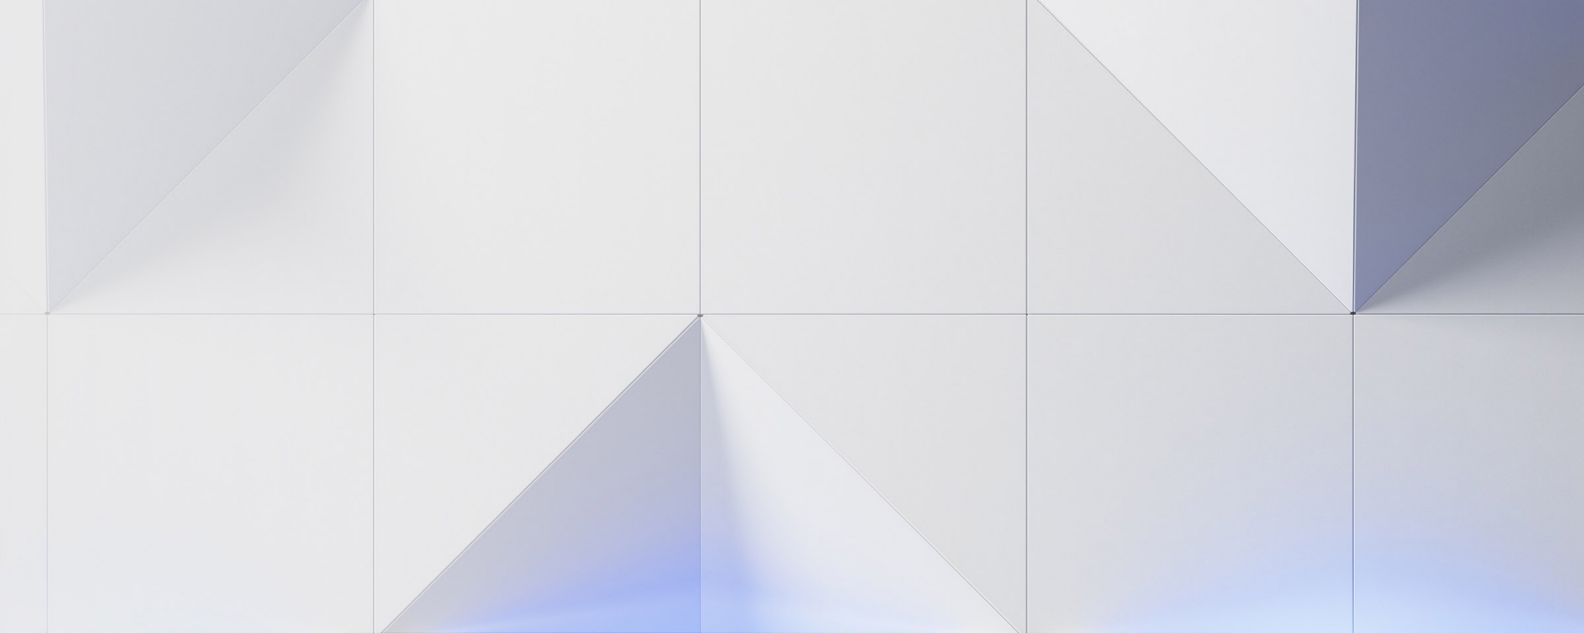 immagine grafica astratta con triangoli e quadrati